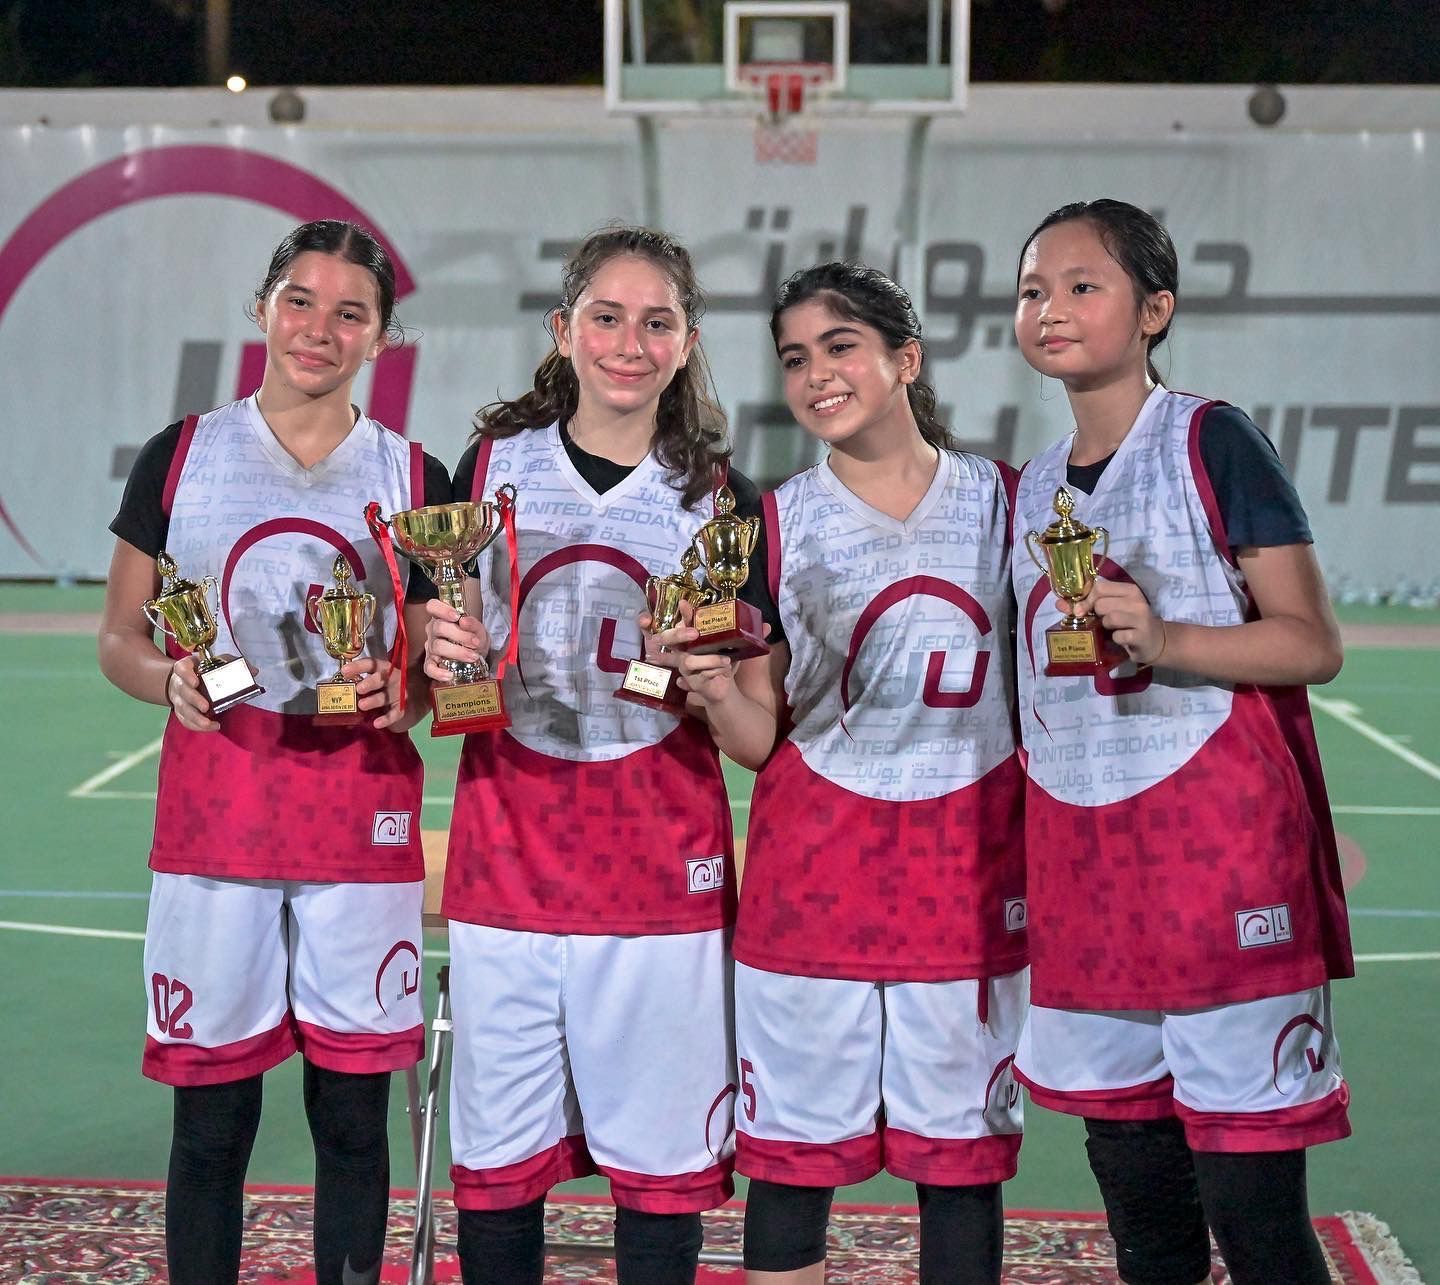 JU Baskeball girls team winning an award